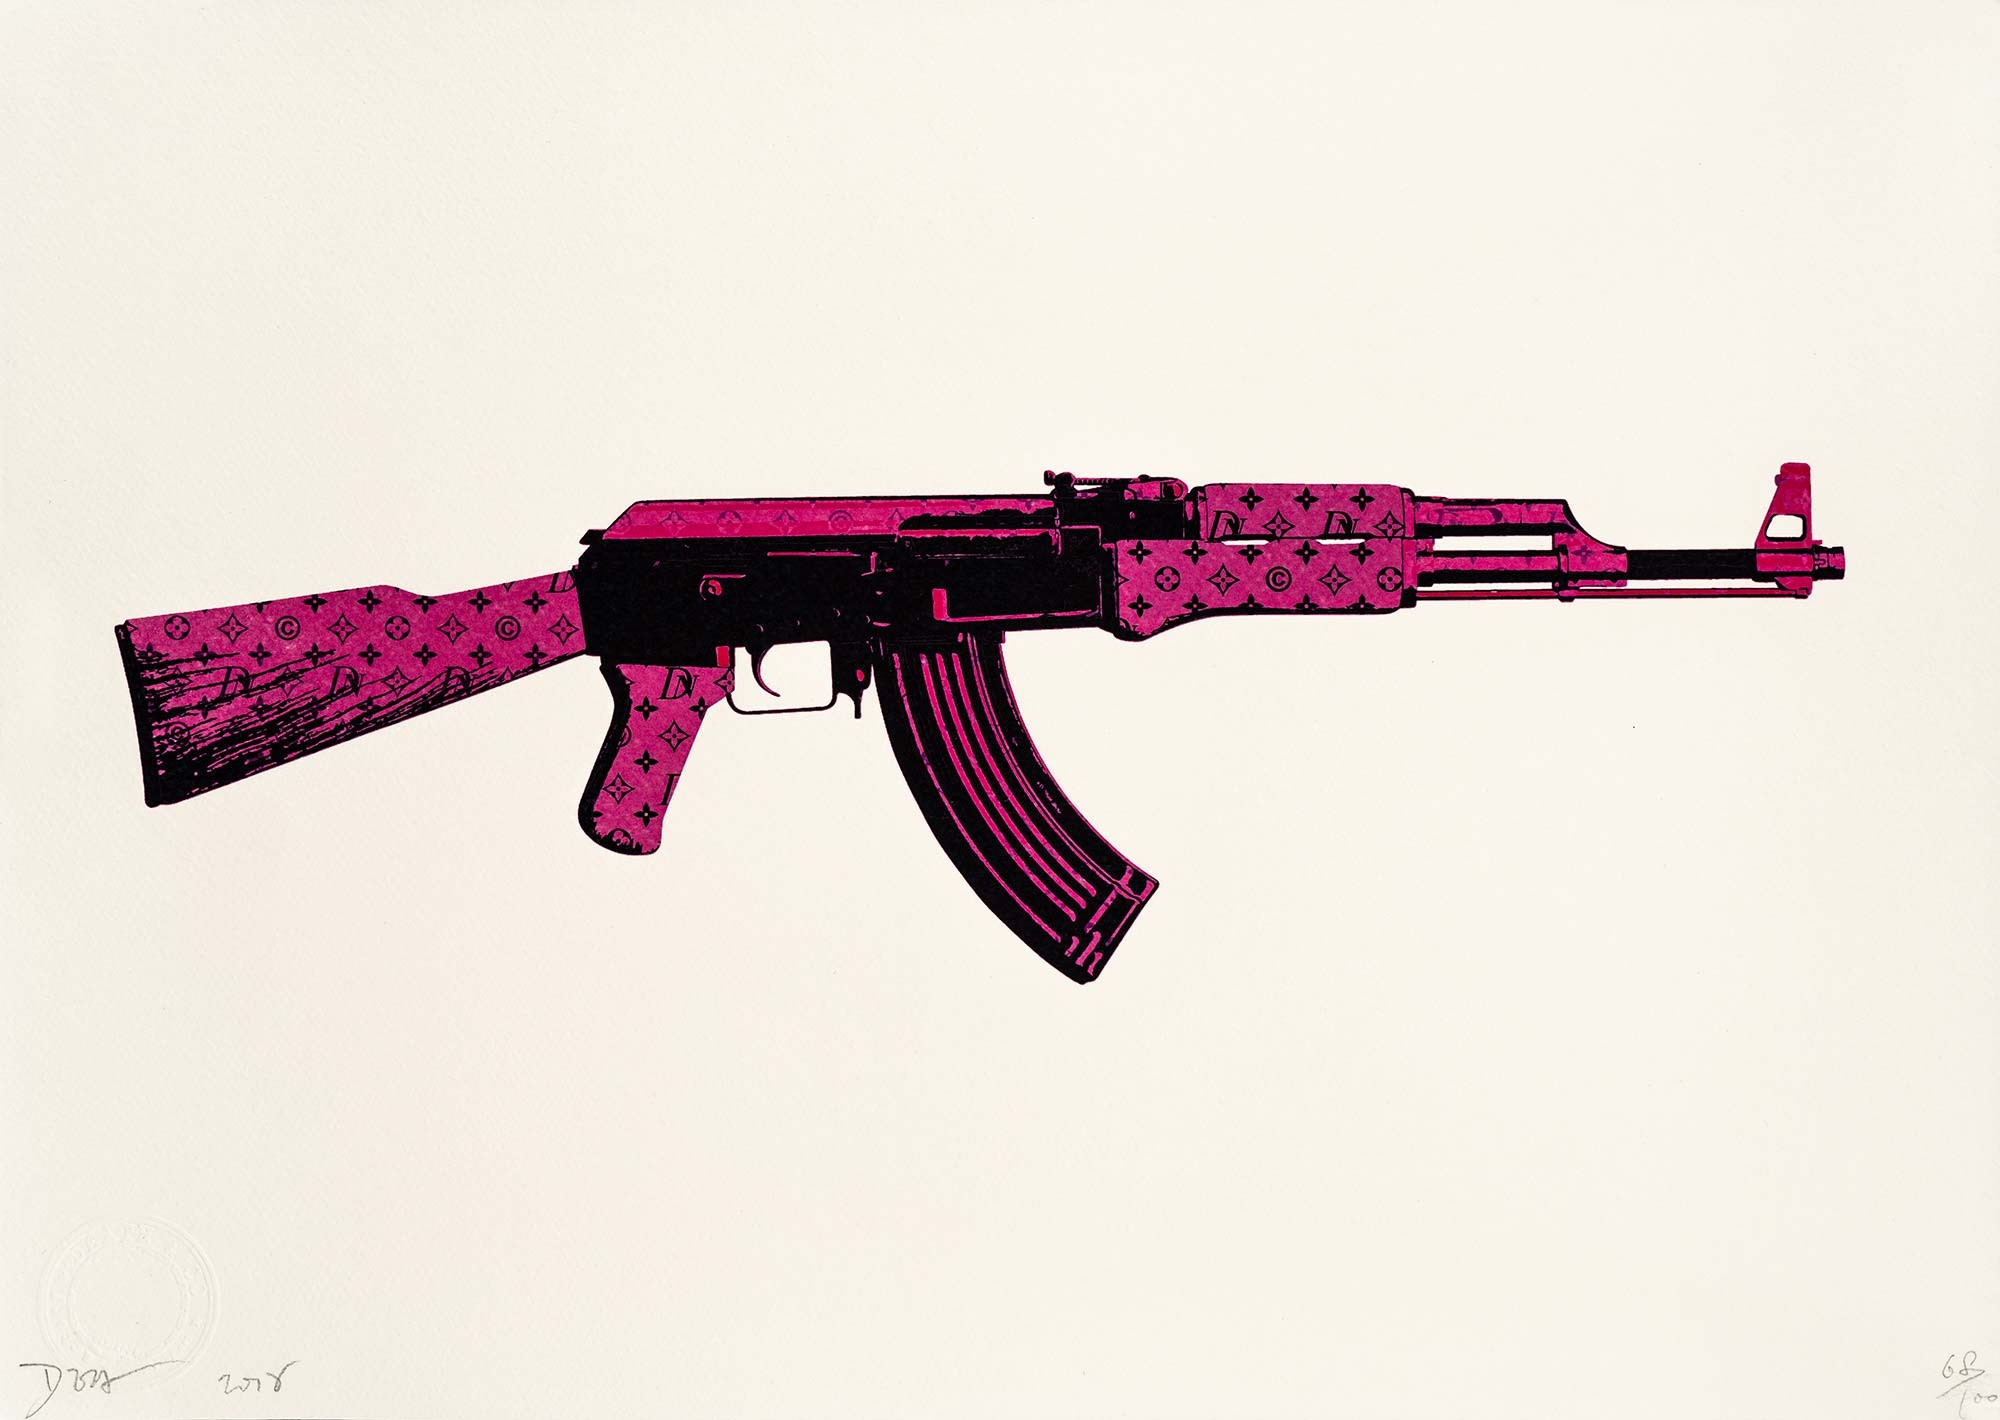 Louis Vuitton Gun Poster by Street Art - Pixels